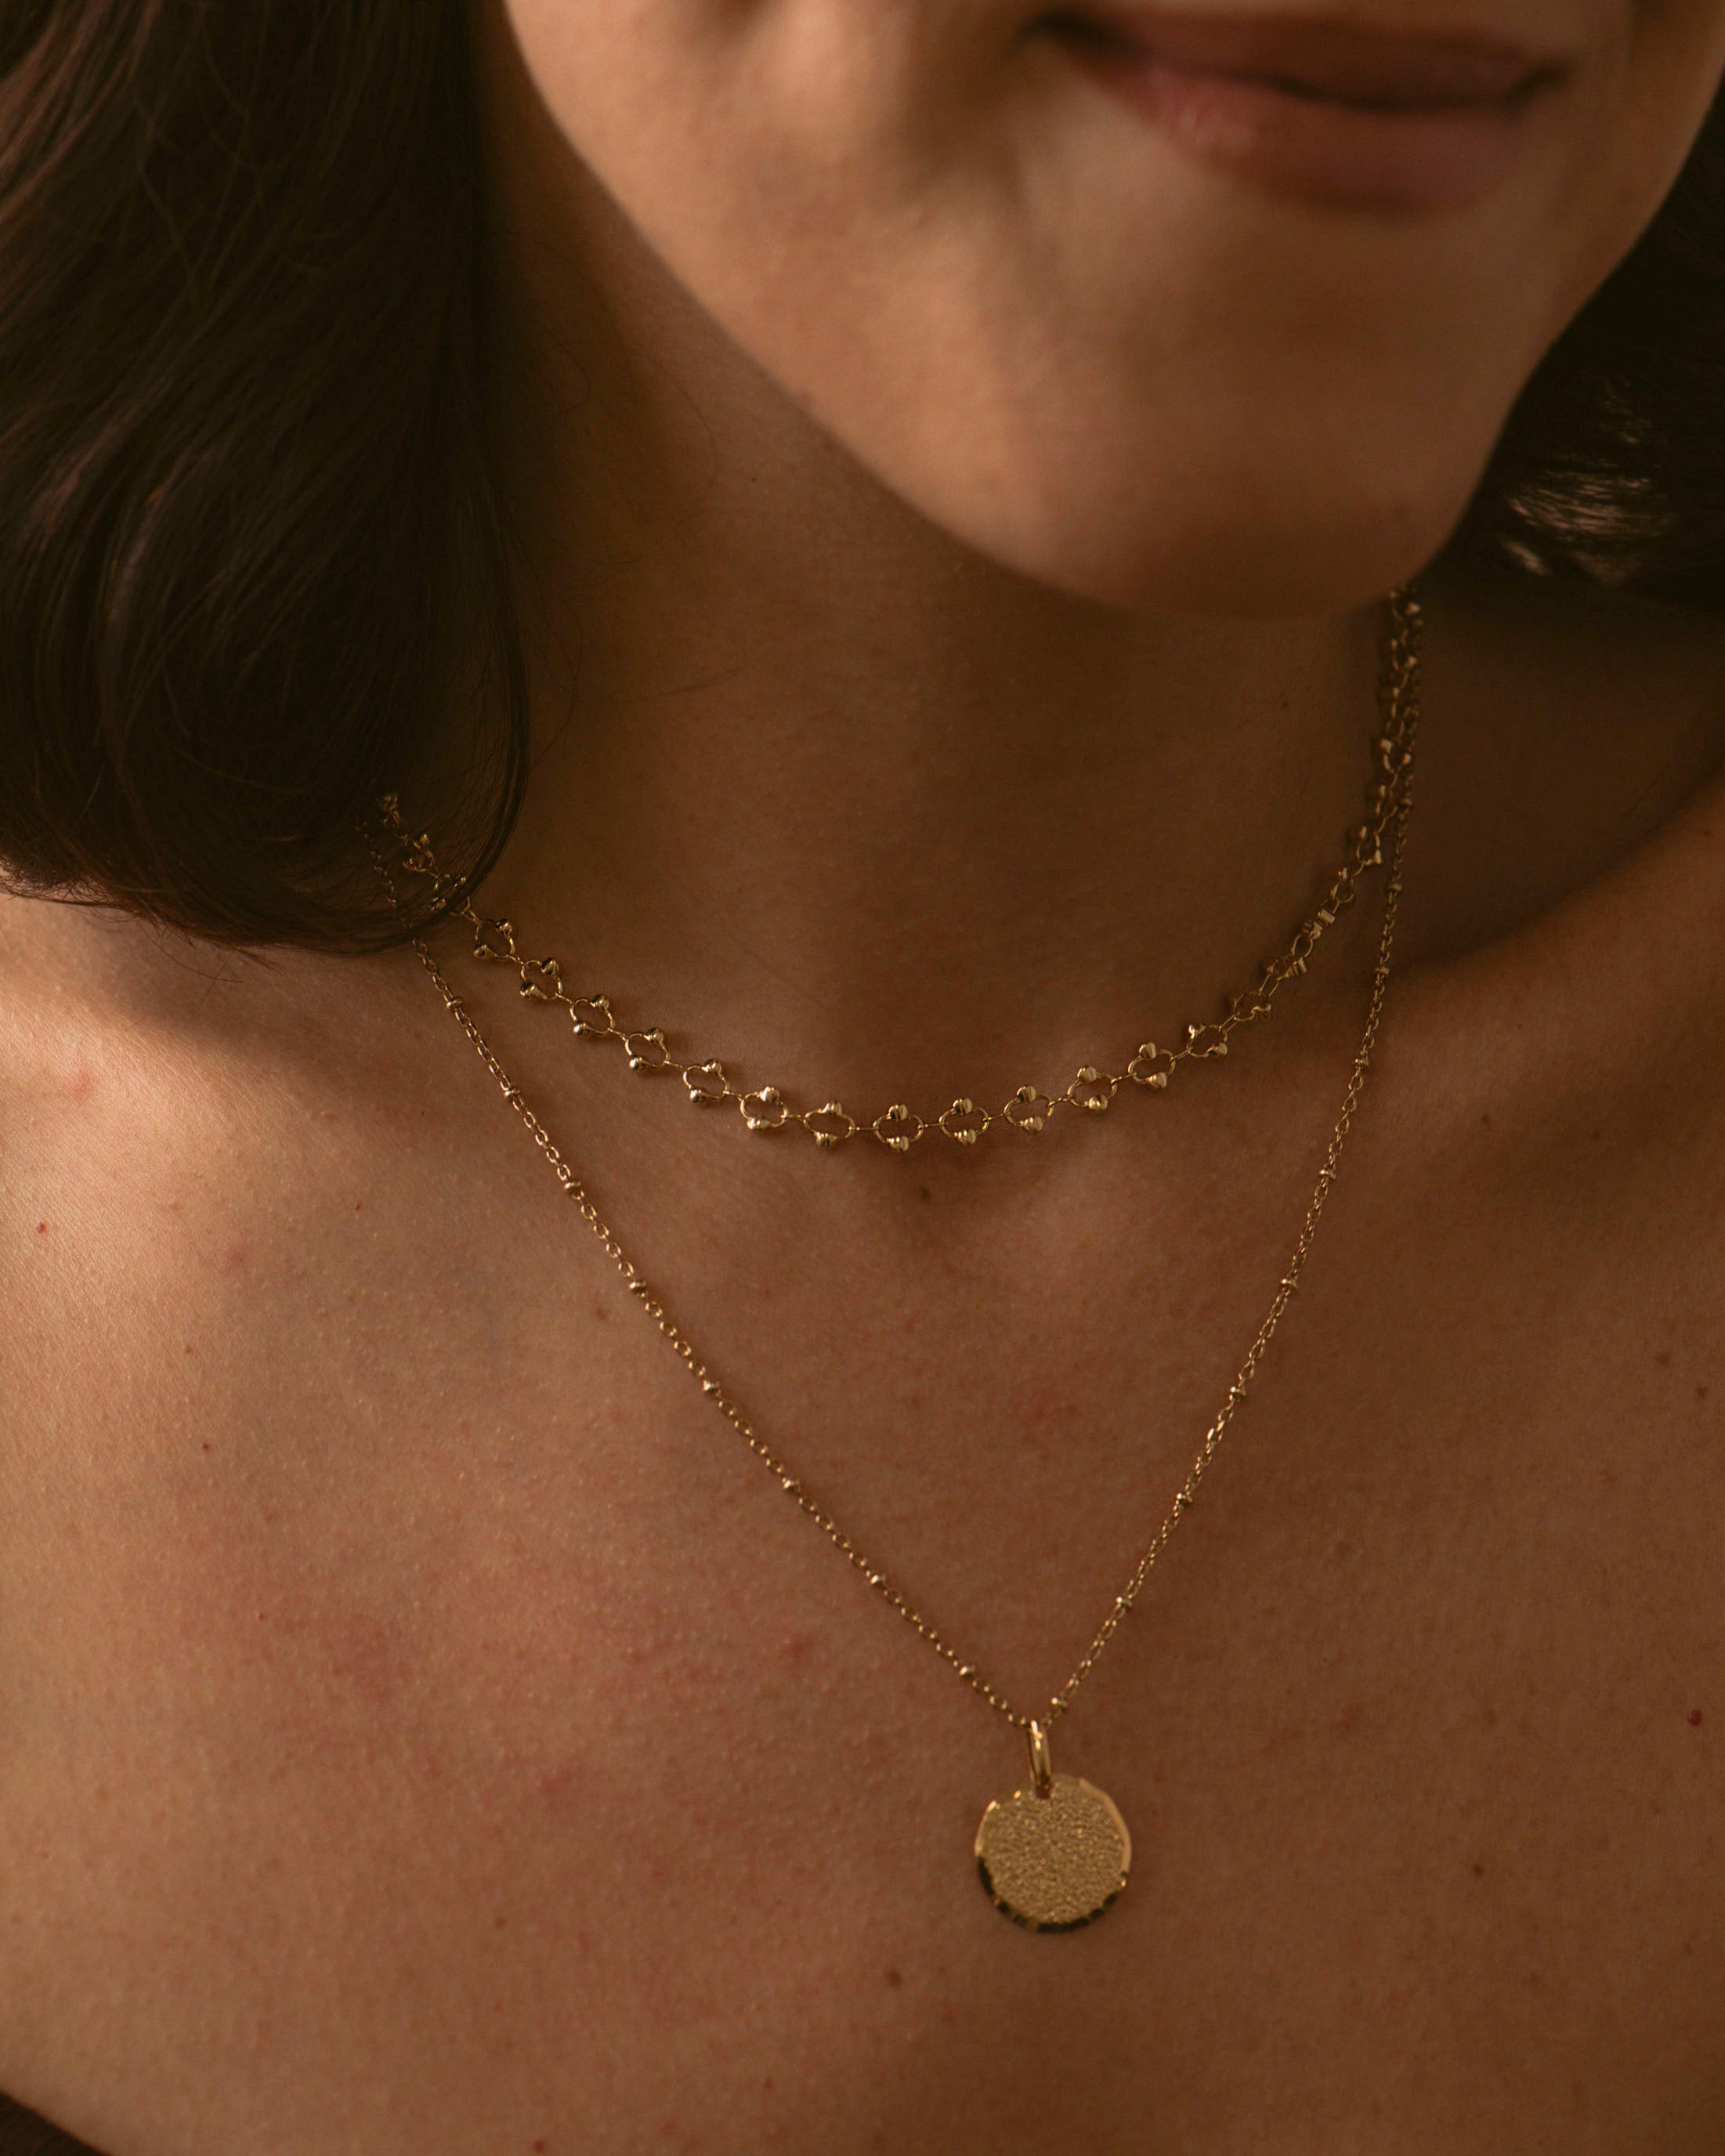 Combinaison de colliers durables en plaqué or 18 carats, avec un collier ras de cou avec une chaîne en maille ovale avec des petites perles dorées, et d'un collier en chaîne boule avec une médaille gravable, fabriqués en France.